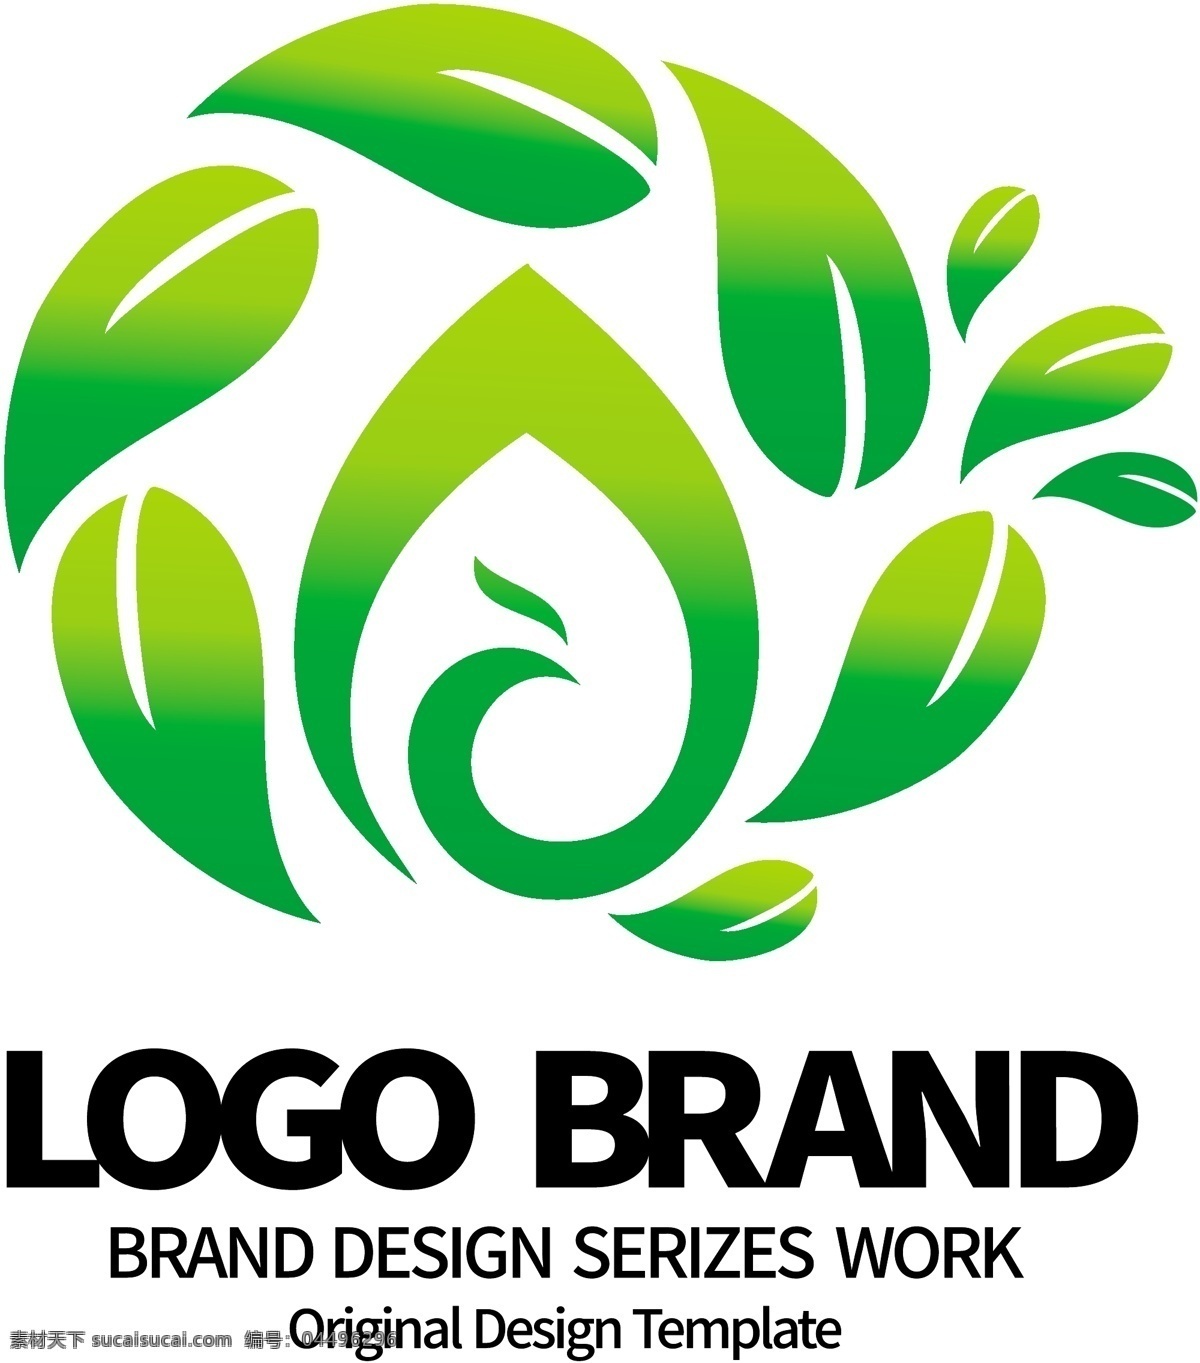 创意 矢量 绿叶 ay 字母 旅游 logo 标志设计 食品安全标志 a 标志 公司 公司标志设计 企业 会徽标志设计 企业标志设计